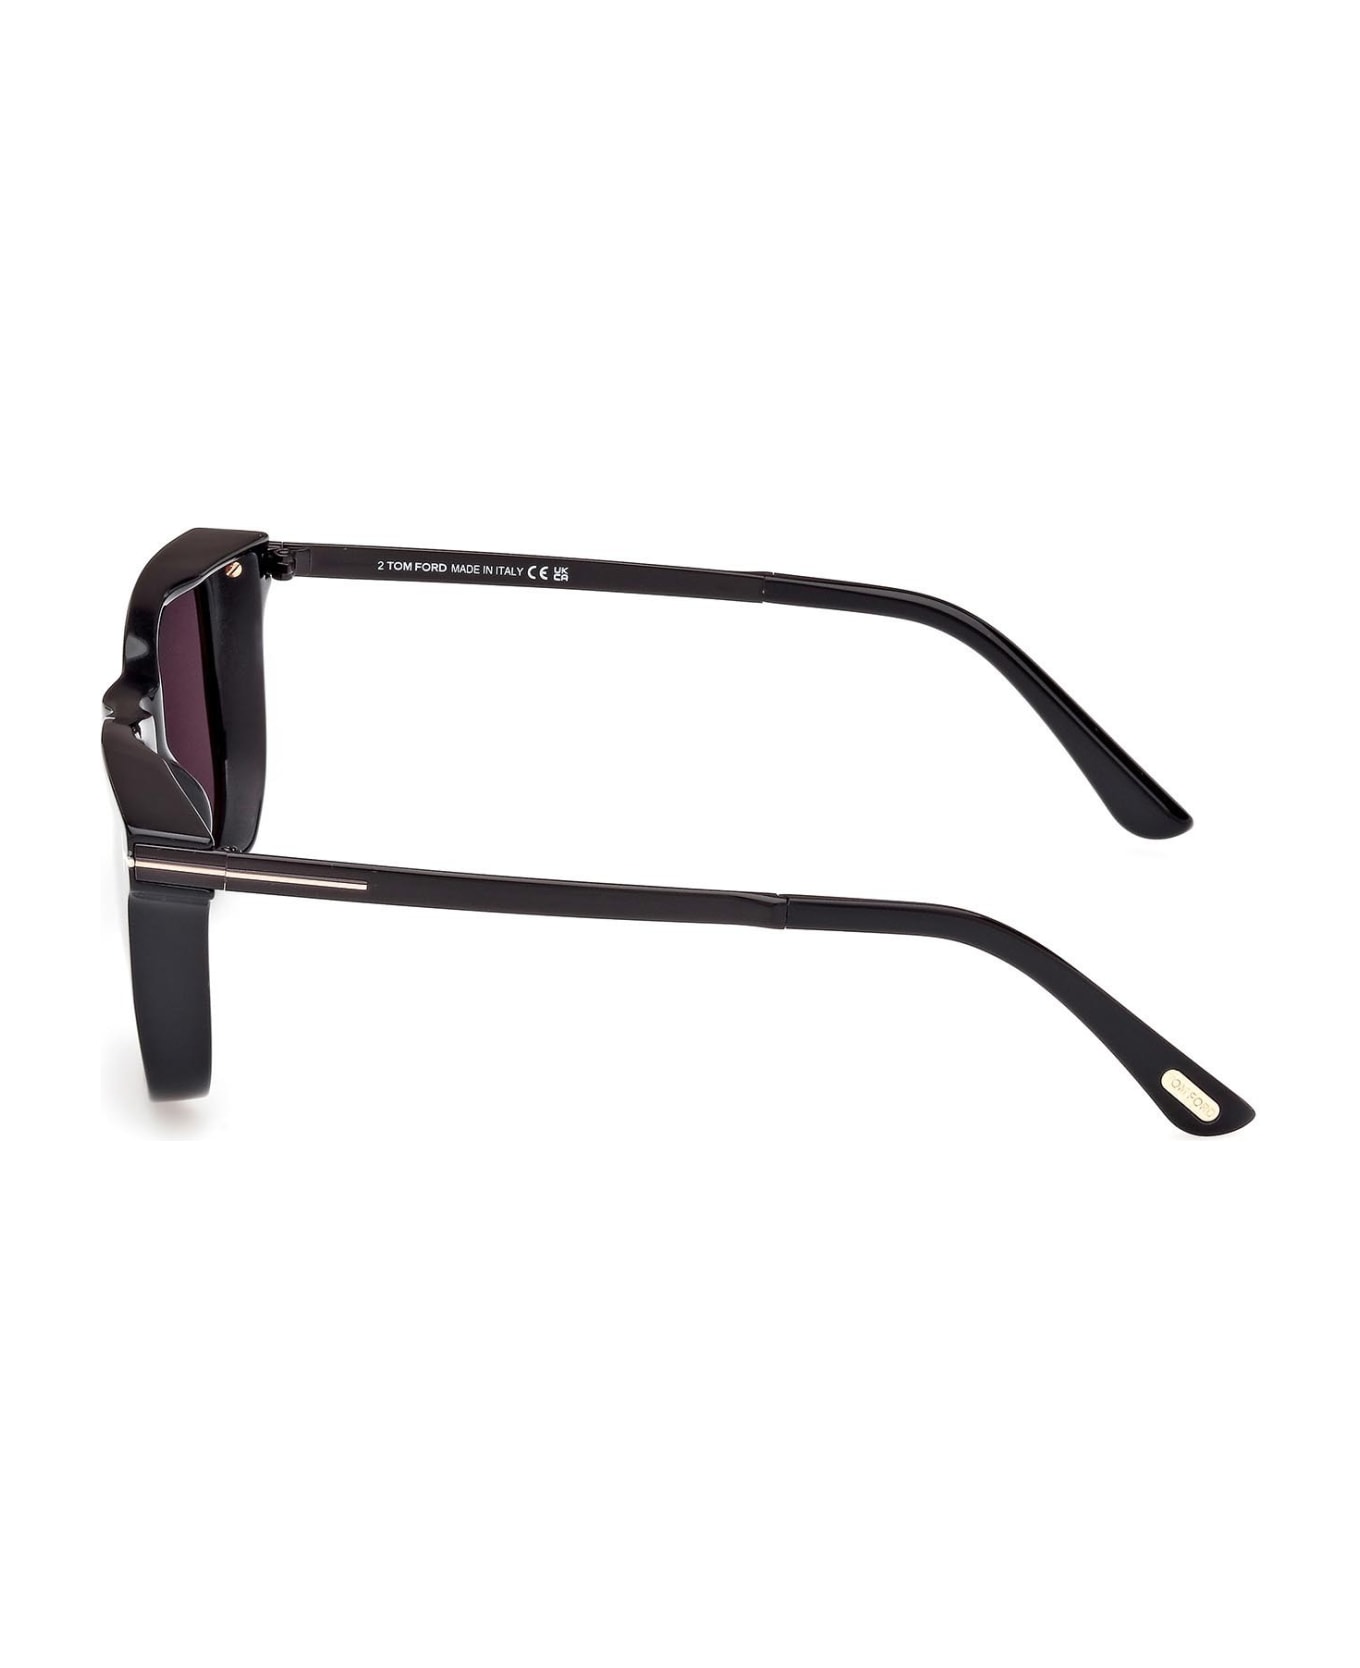 Tom Ford Eyewear Sunglasses - Nero/Grigio サングラス